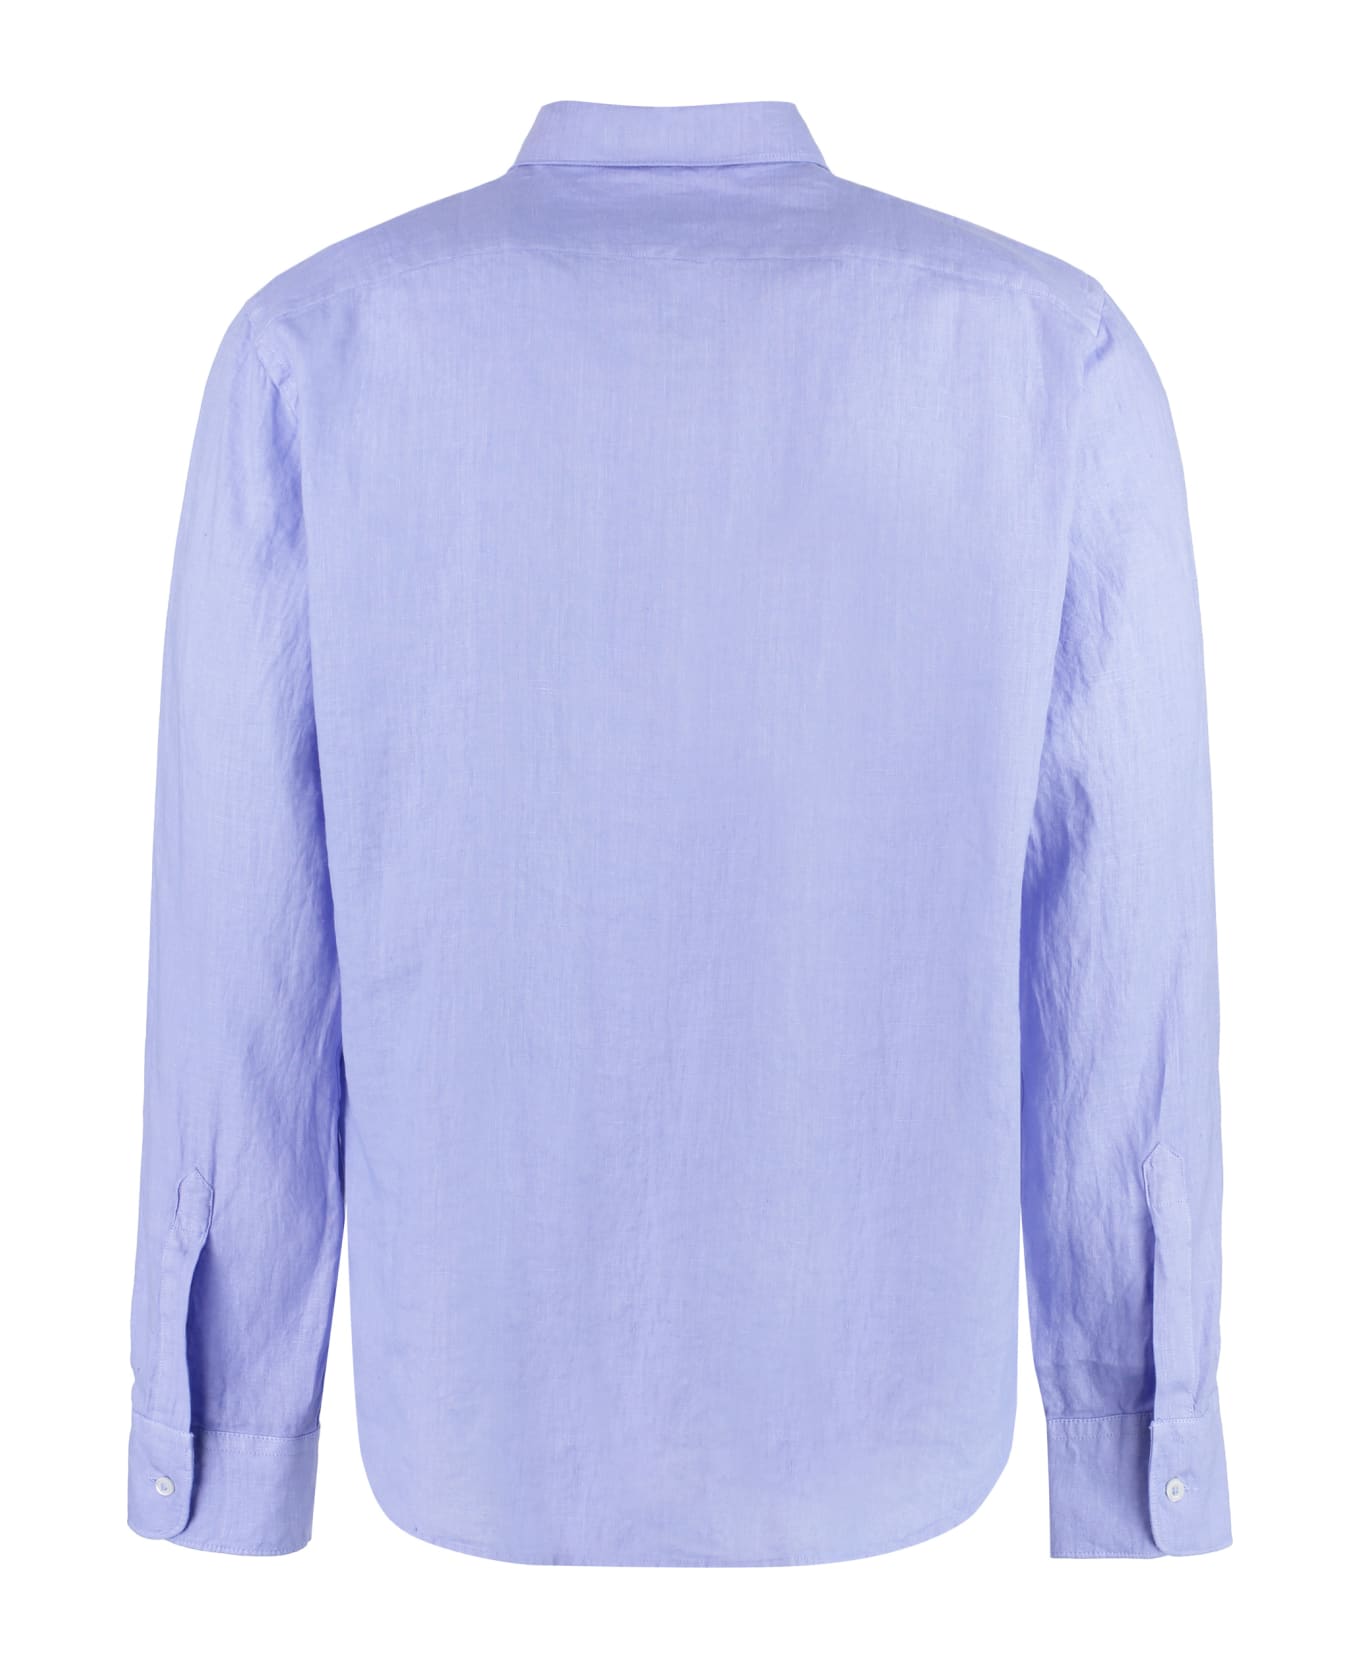 Aspesi Linen Shirt - Light Blue